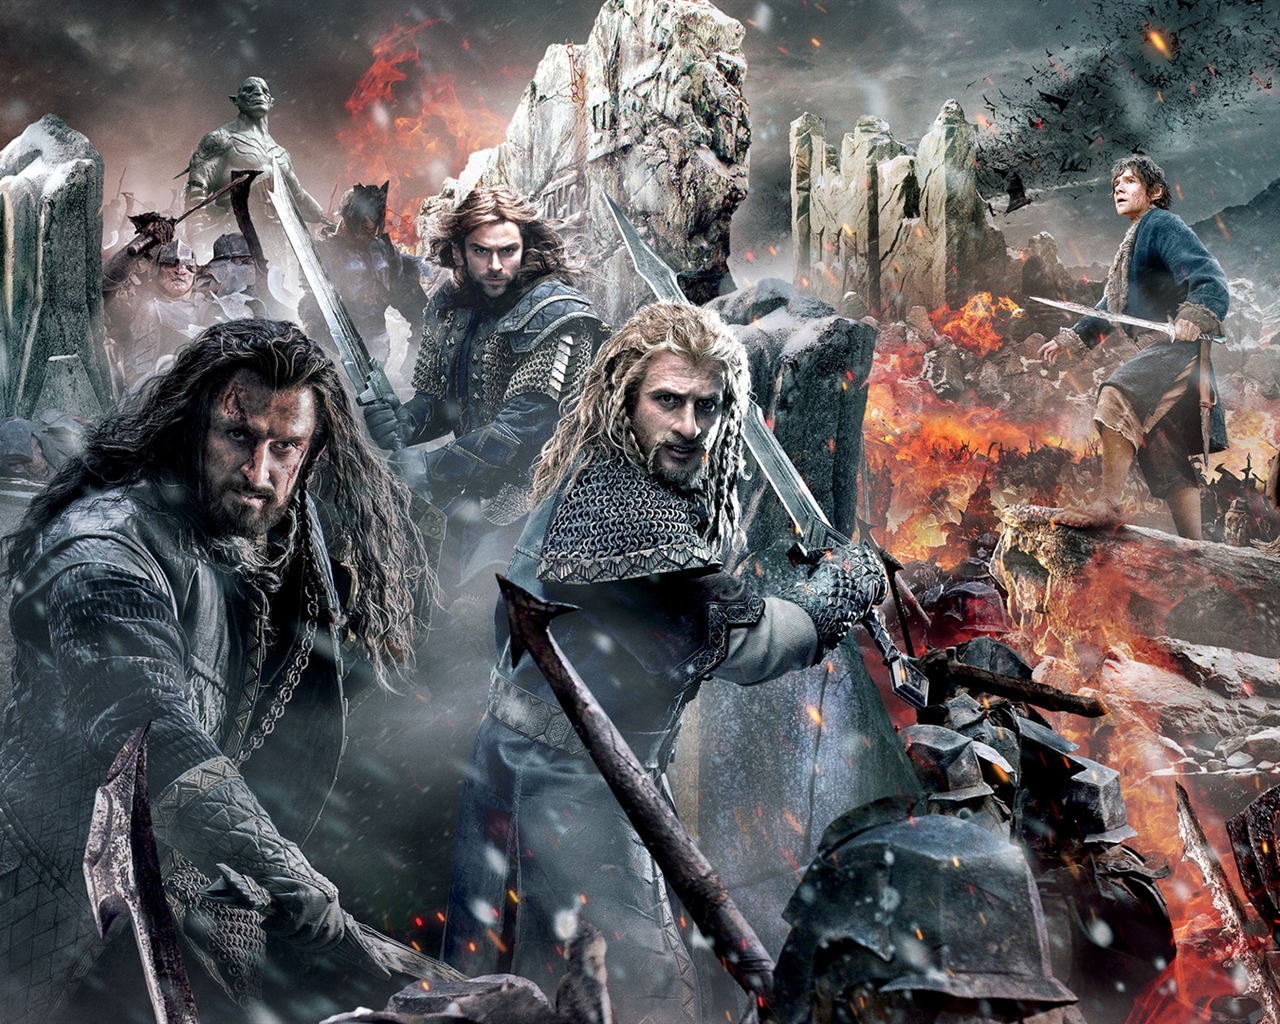 El Hobbit: La Batalla de los Cinco Ejércitos, fondos de pantalla de películas de alta definición #1 - 1280x1024